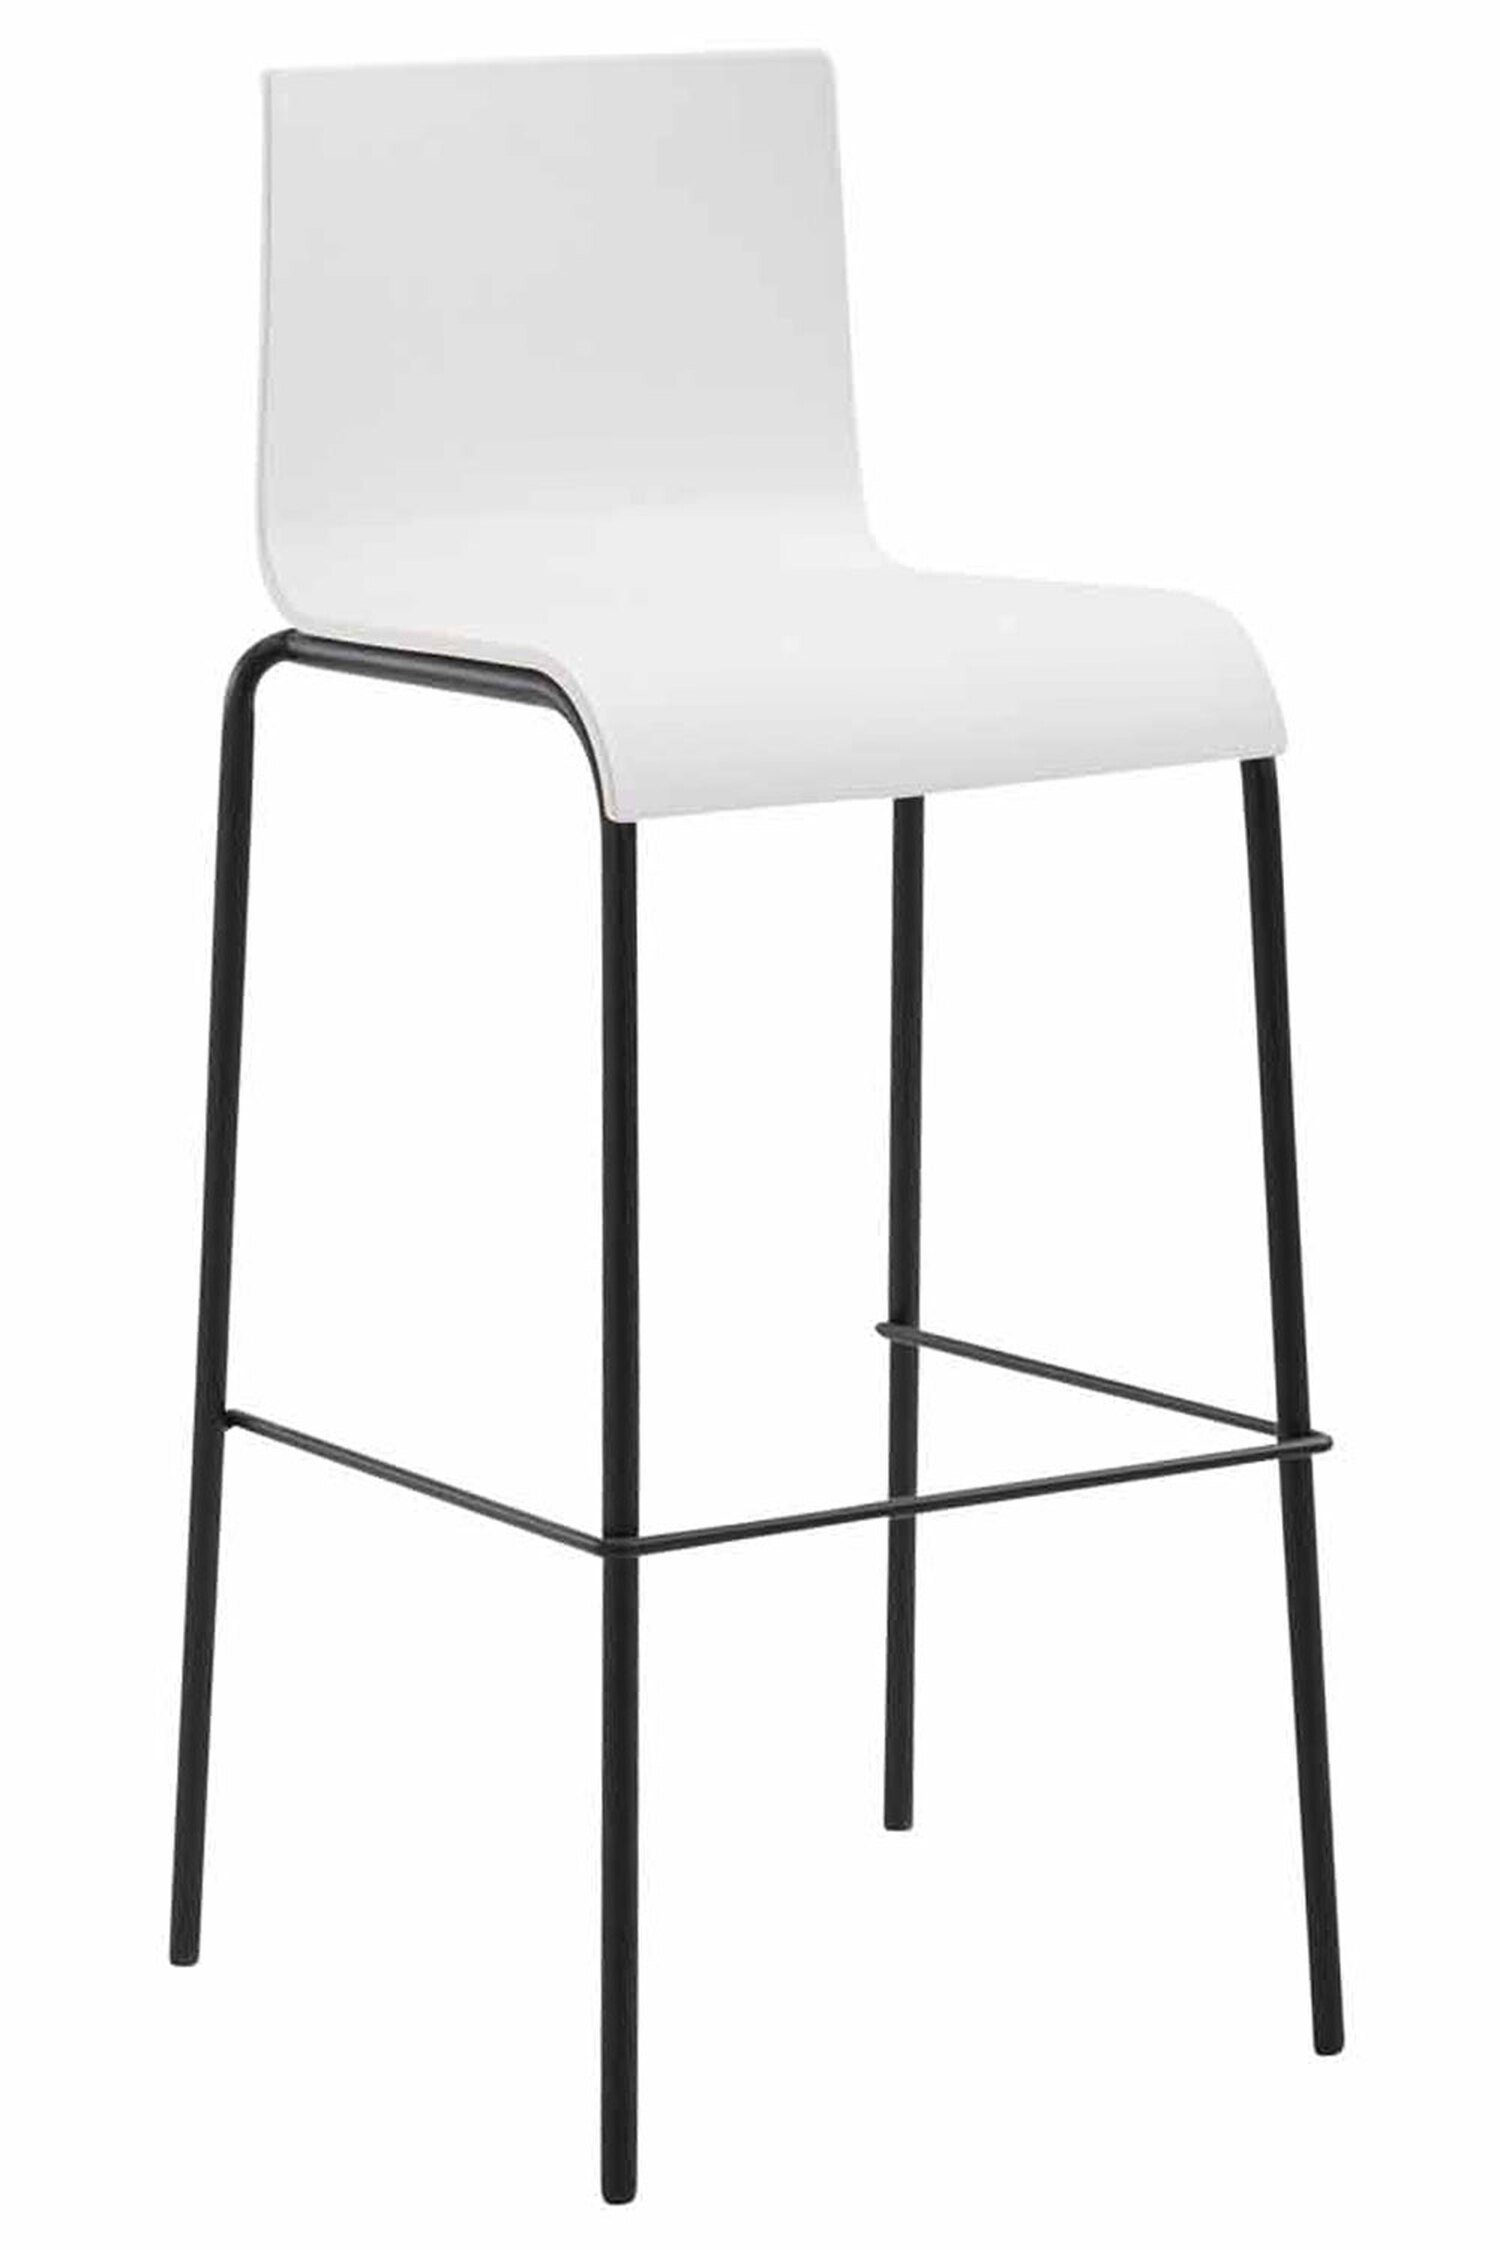 TPFLiving Barhocker Weiß Hocker Metall schwarz & Kunststoff - Fußstütze (Barstuhl Küche), Theke 4-Fuß Sitzfläche: Kano Gestell mit angenehmer für